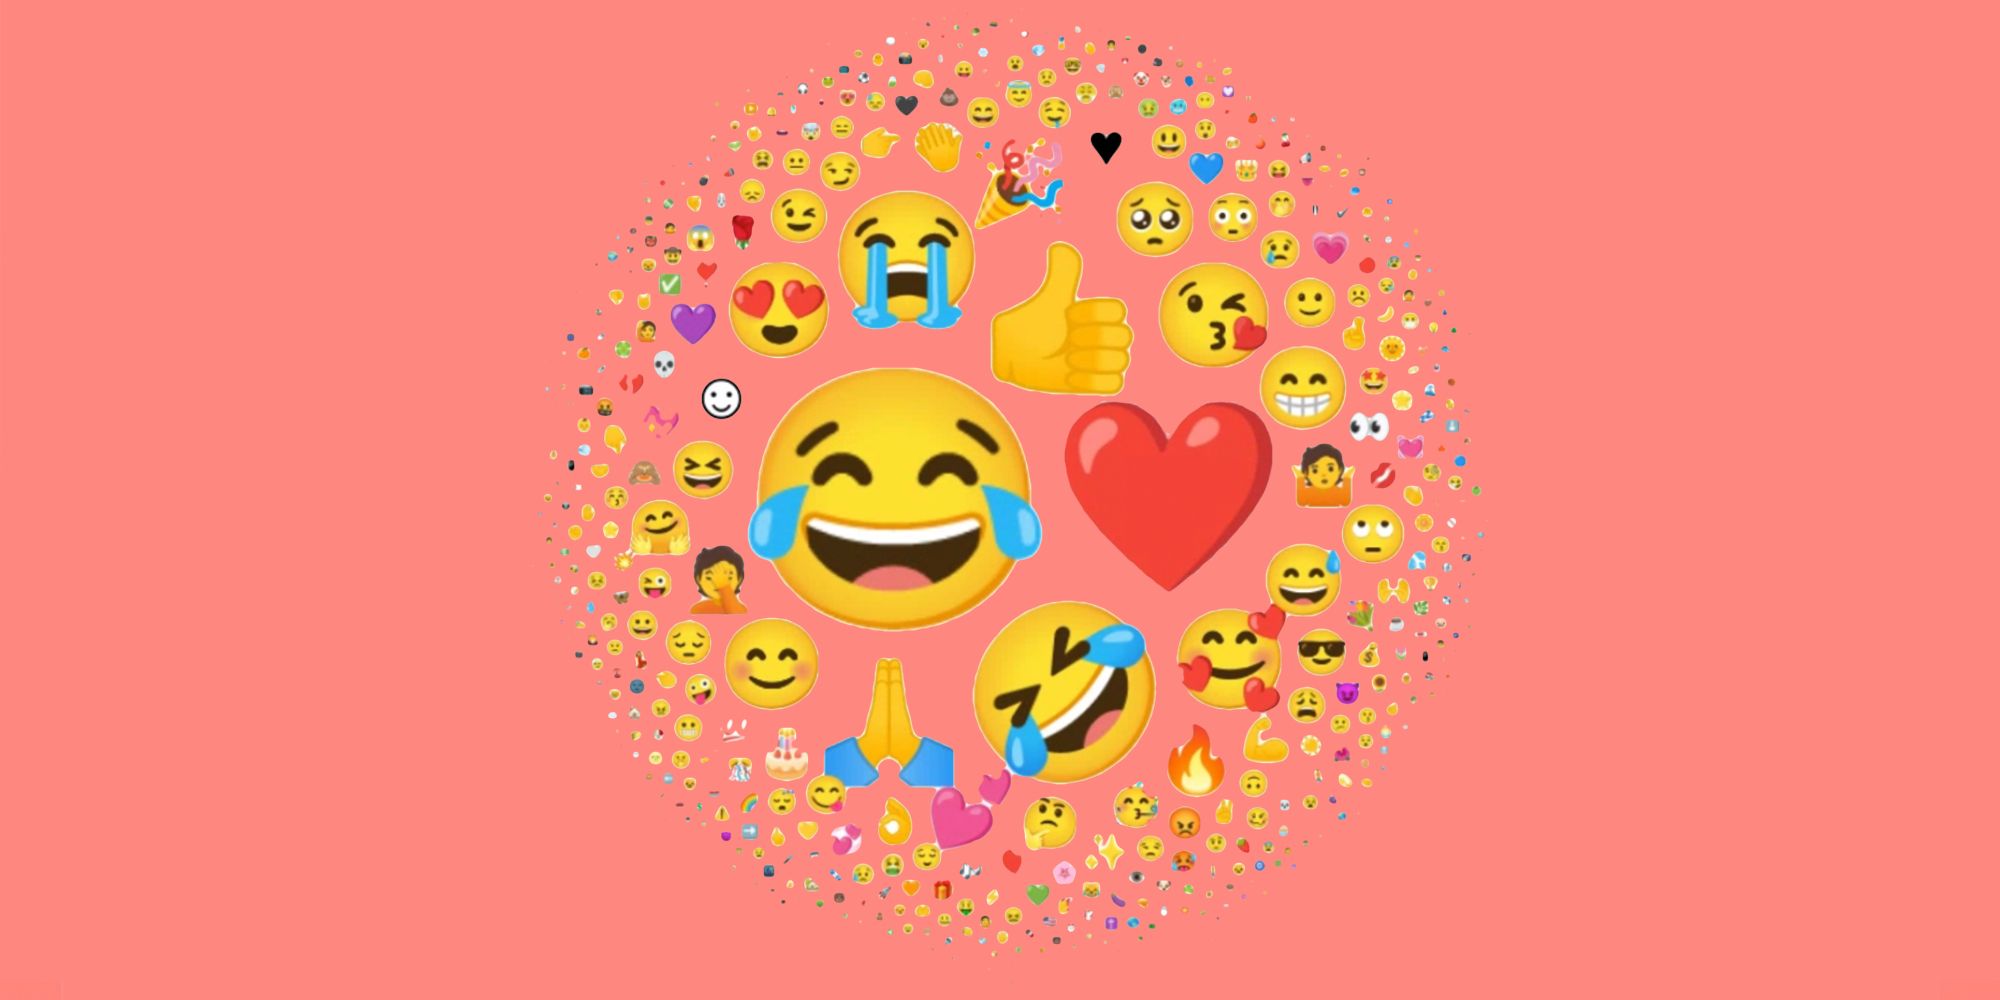 Most used emoji. ЭМОДЖИ путь. Джой ЭМОДЖИ 2021 вся коллекция. The most used Emoji in 2022.